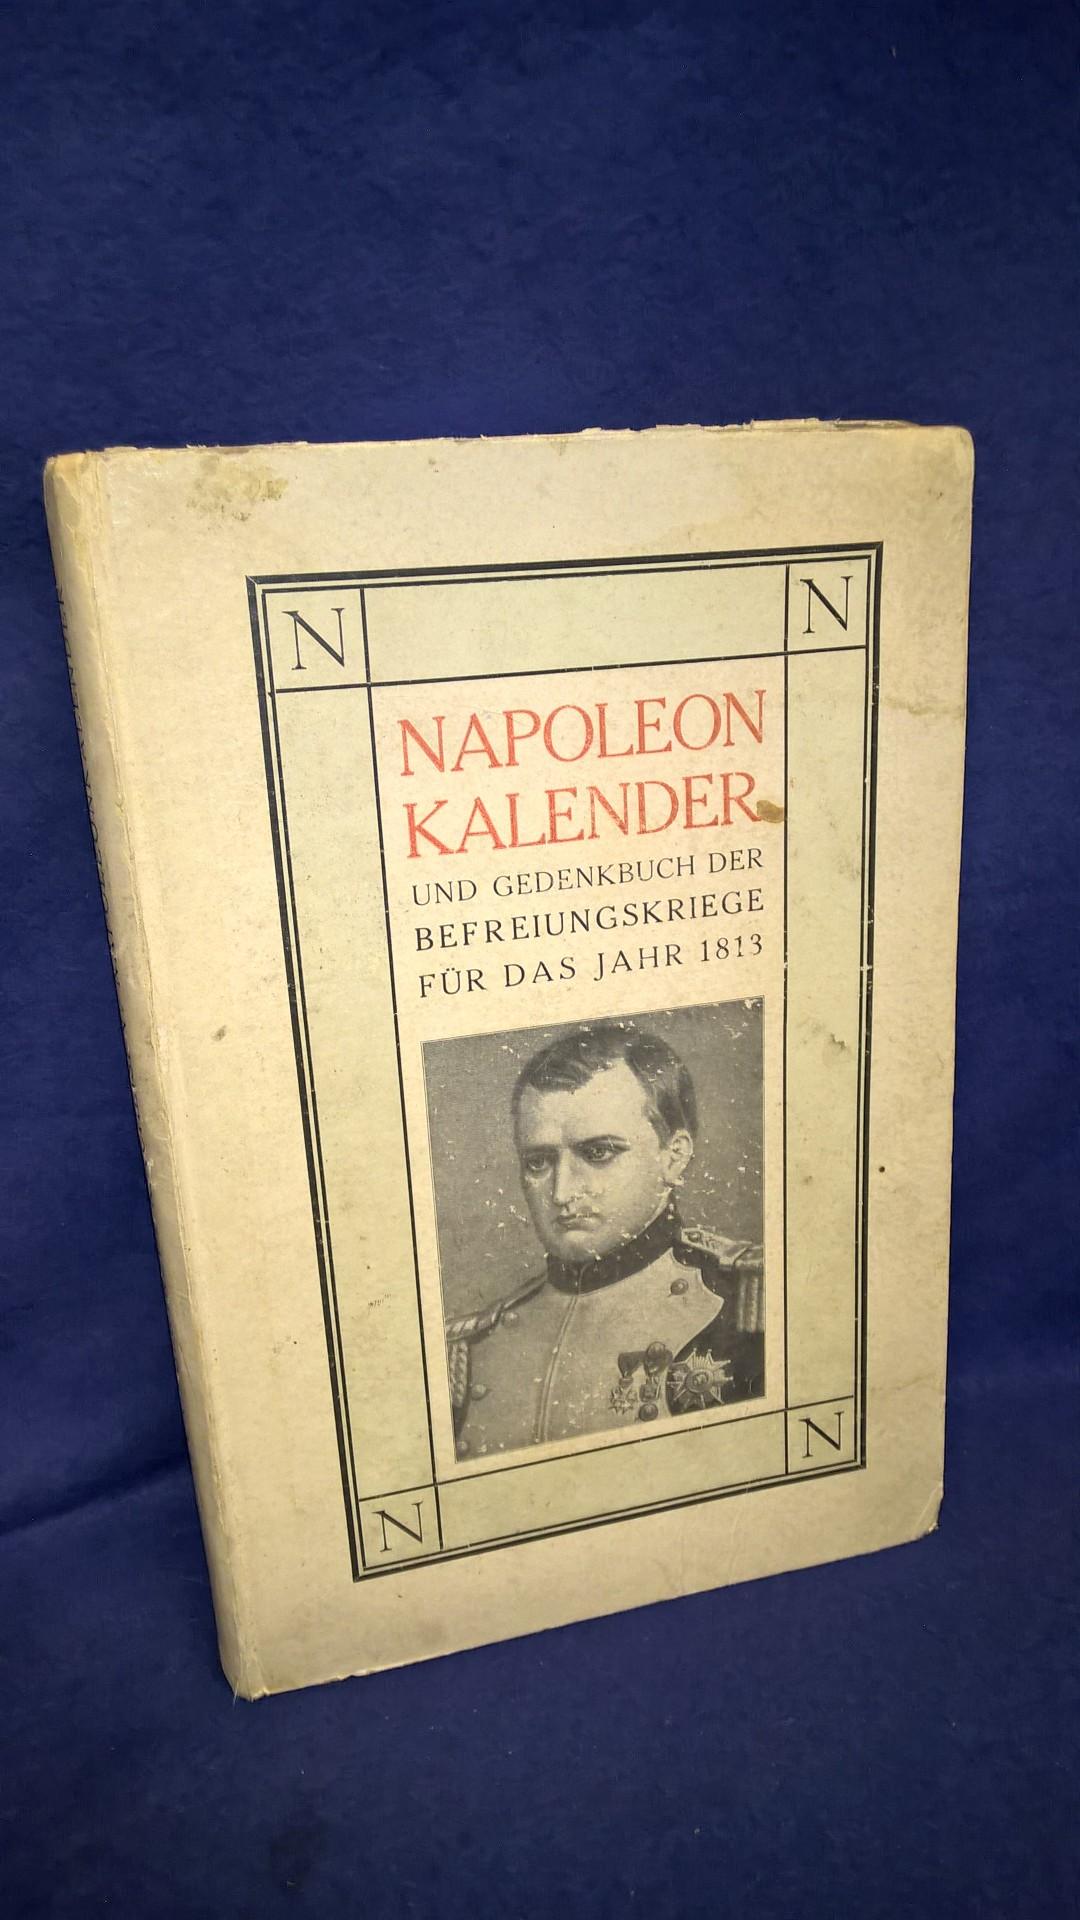 Napoleon Kalender und Gedenkbuch der Befreiungskriege für das Jahr 1813.